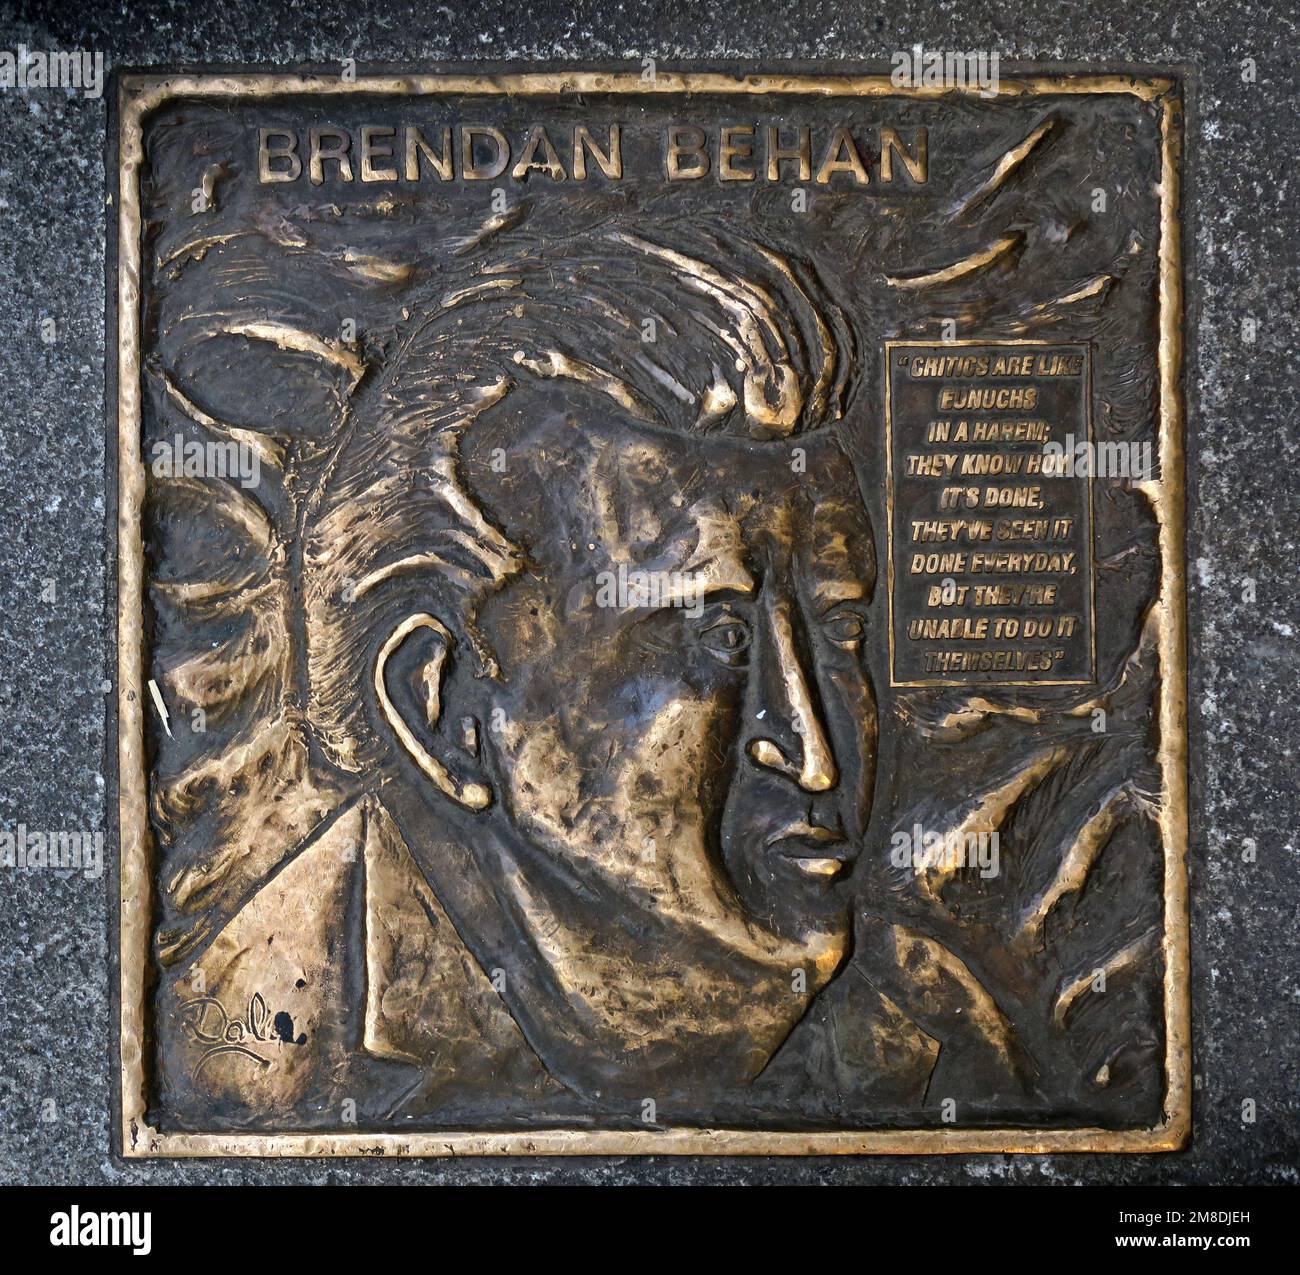 Brendan Behan bronze pavement plaque, Fleet St, Temple Bar, Dublin 2, D02 NX25, Eire, Ireland Stock Photo